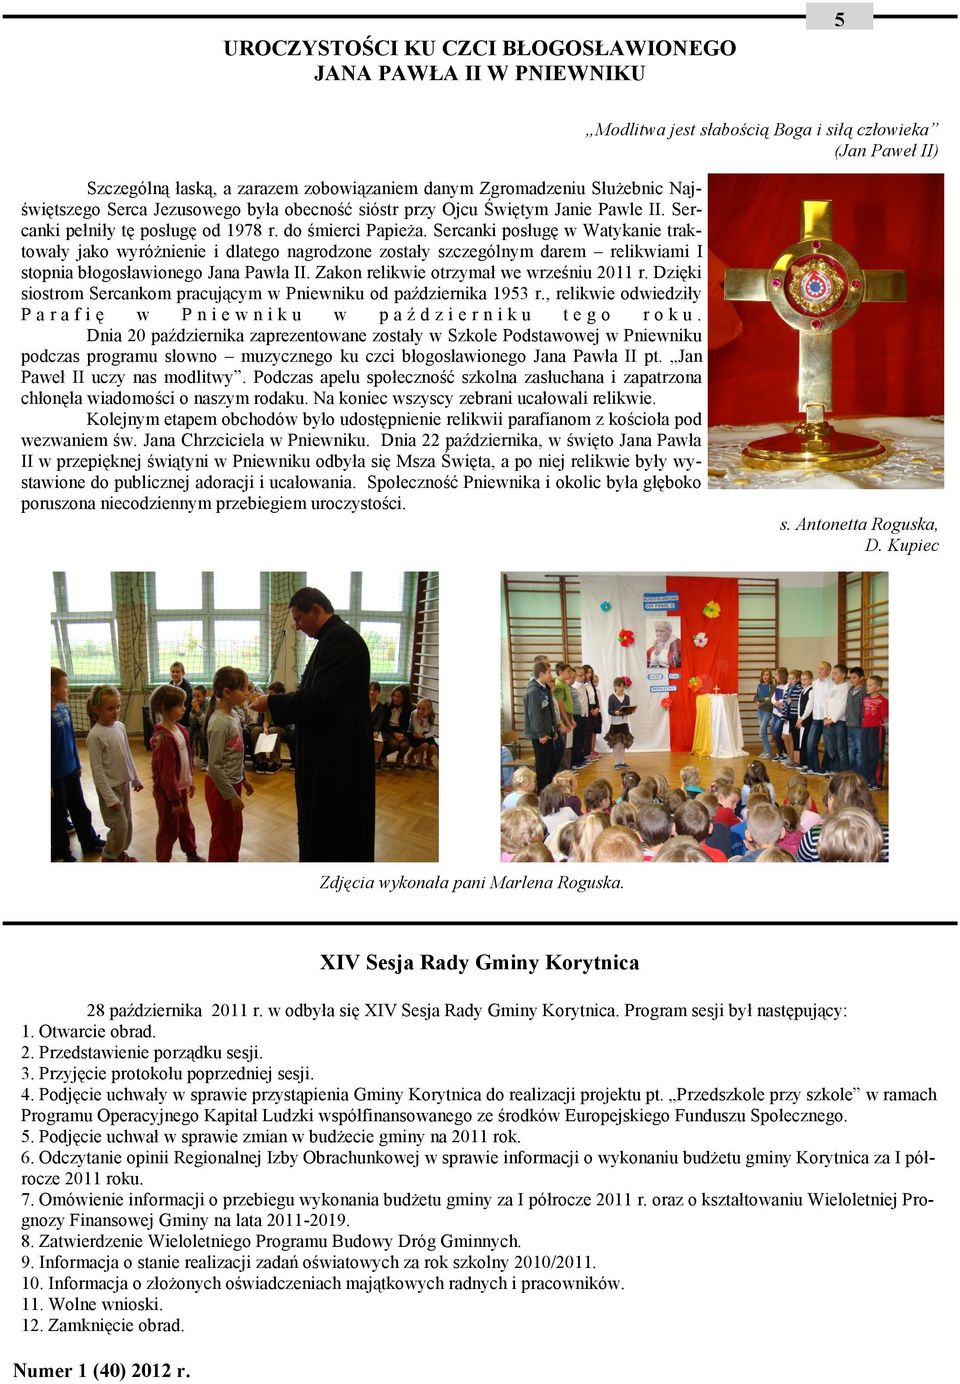 Sercanki posługę w Watykanie traktowały jako wyróżnienie i dlatego nagrodzone zostały szczególnym darem relikwiami I stopnia błogosławionego Jana Pawła II. Zakon relikwie otrzymał we wrześniu 2011 r.